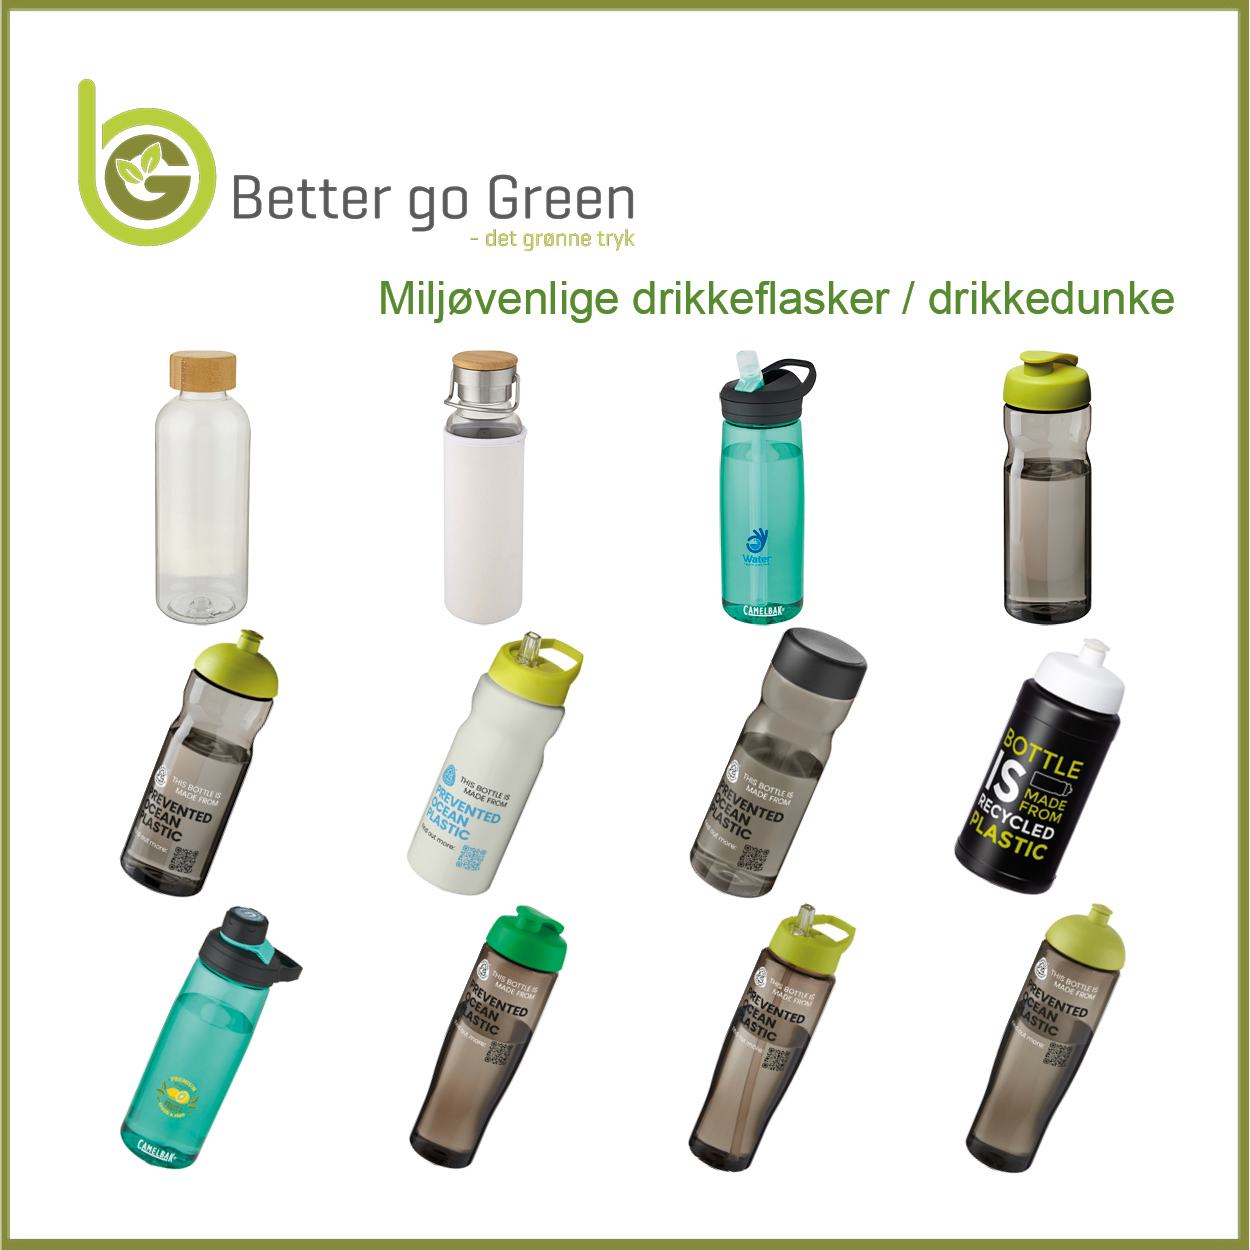 Miljøvenlige drikkedunke med logotryk. BetterGoGreen.dk